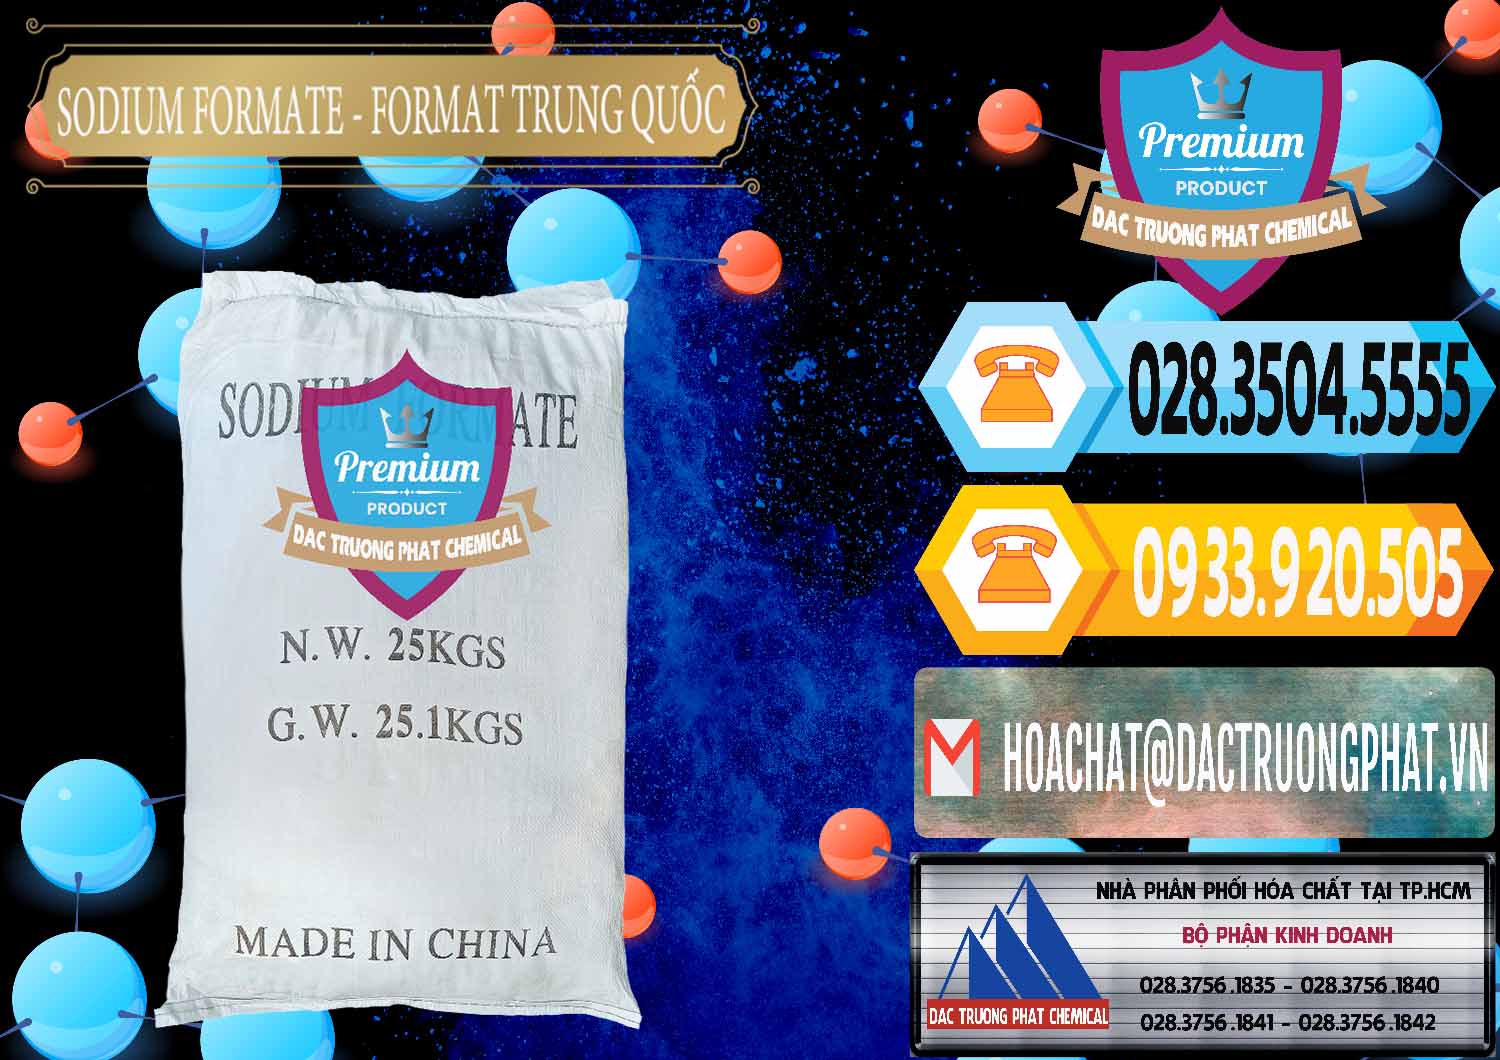 Công ty chuyên bán - cung cấp Sodium Formate - Natri Format Trung Quốc China - 0142 - Cty cung cấp - kinh doanh hóa chất tại TP.HCM - hoachattayrua.net